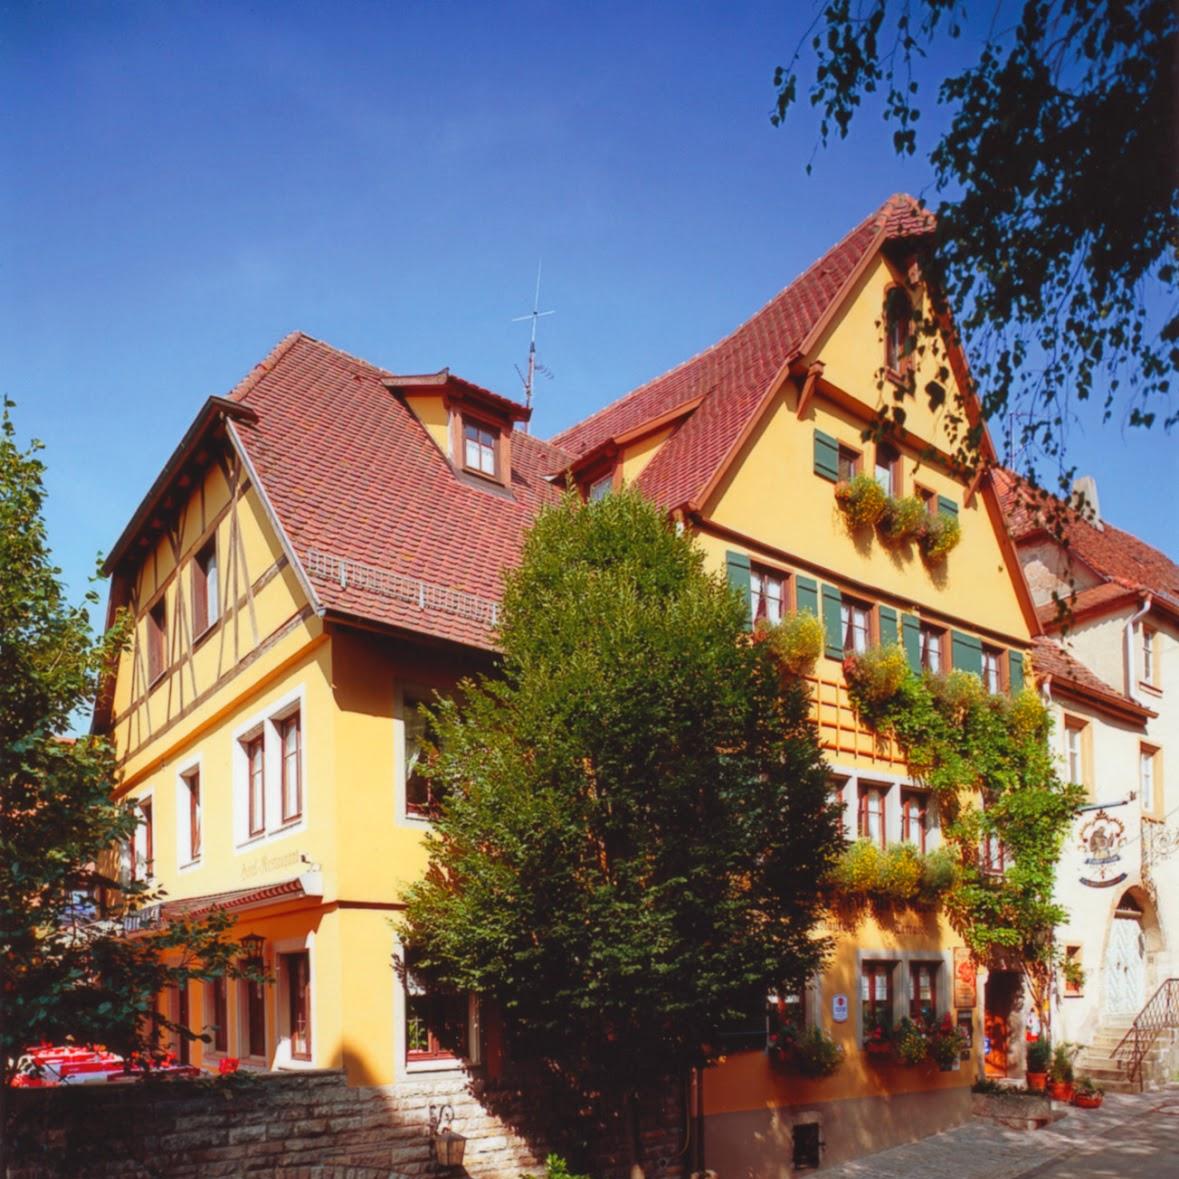 Restaurant "Hotel Klosterstüble" in Rothenburg ob der Tauber